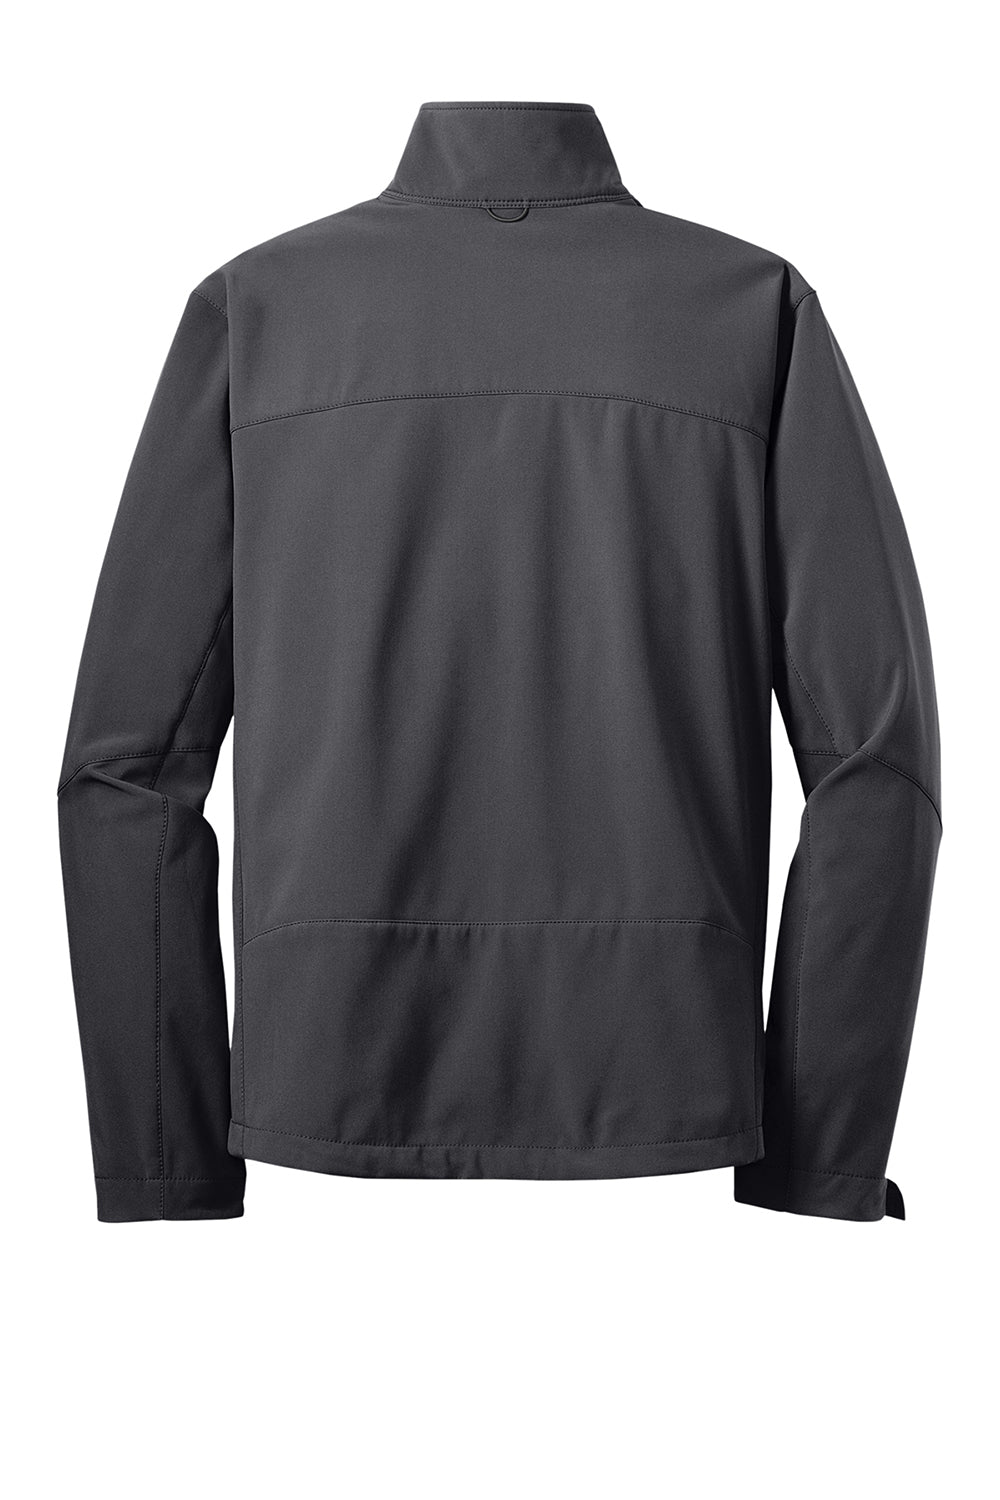 Eddie Bauer EB530 Mens Water Resistant Full Zip Jacket Steel Grey Flat Back